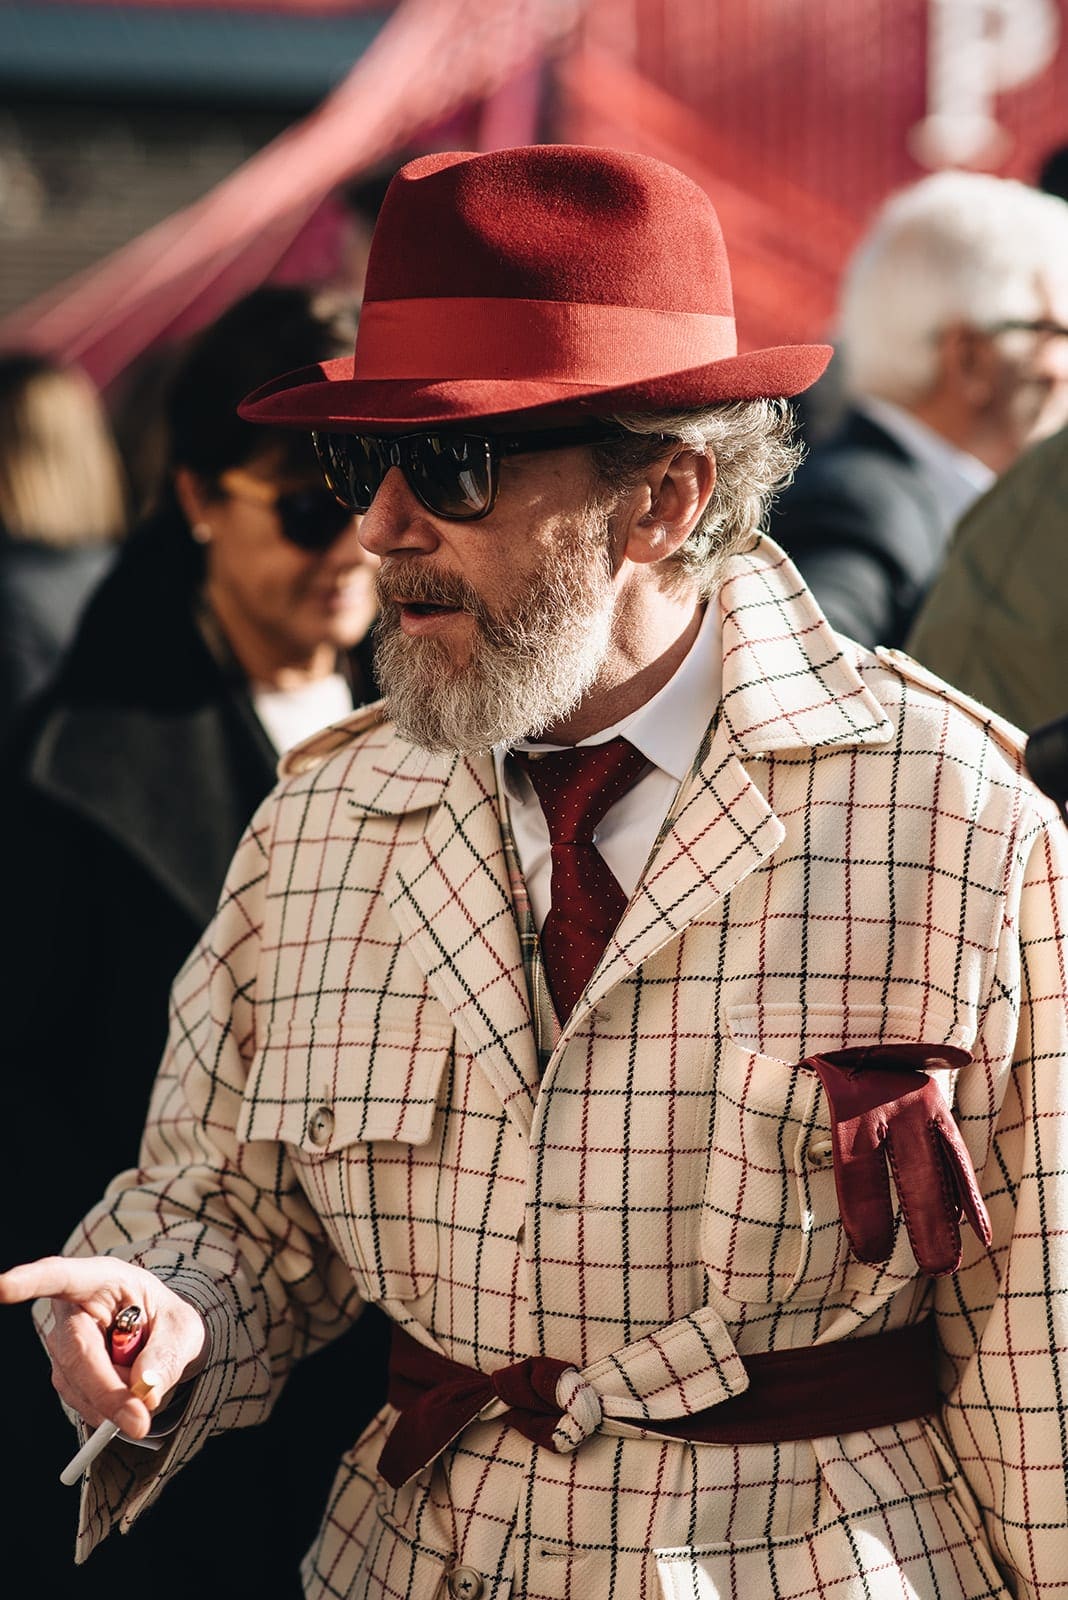 pitti uomo, Pitti Uomo 97: de meest stijlvolle outfits en de trends voor 2020